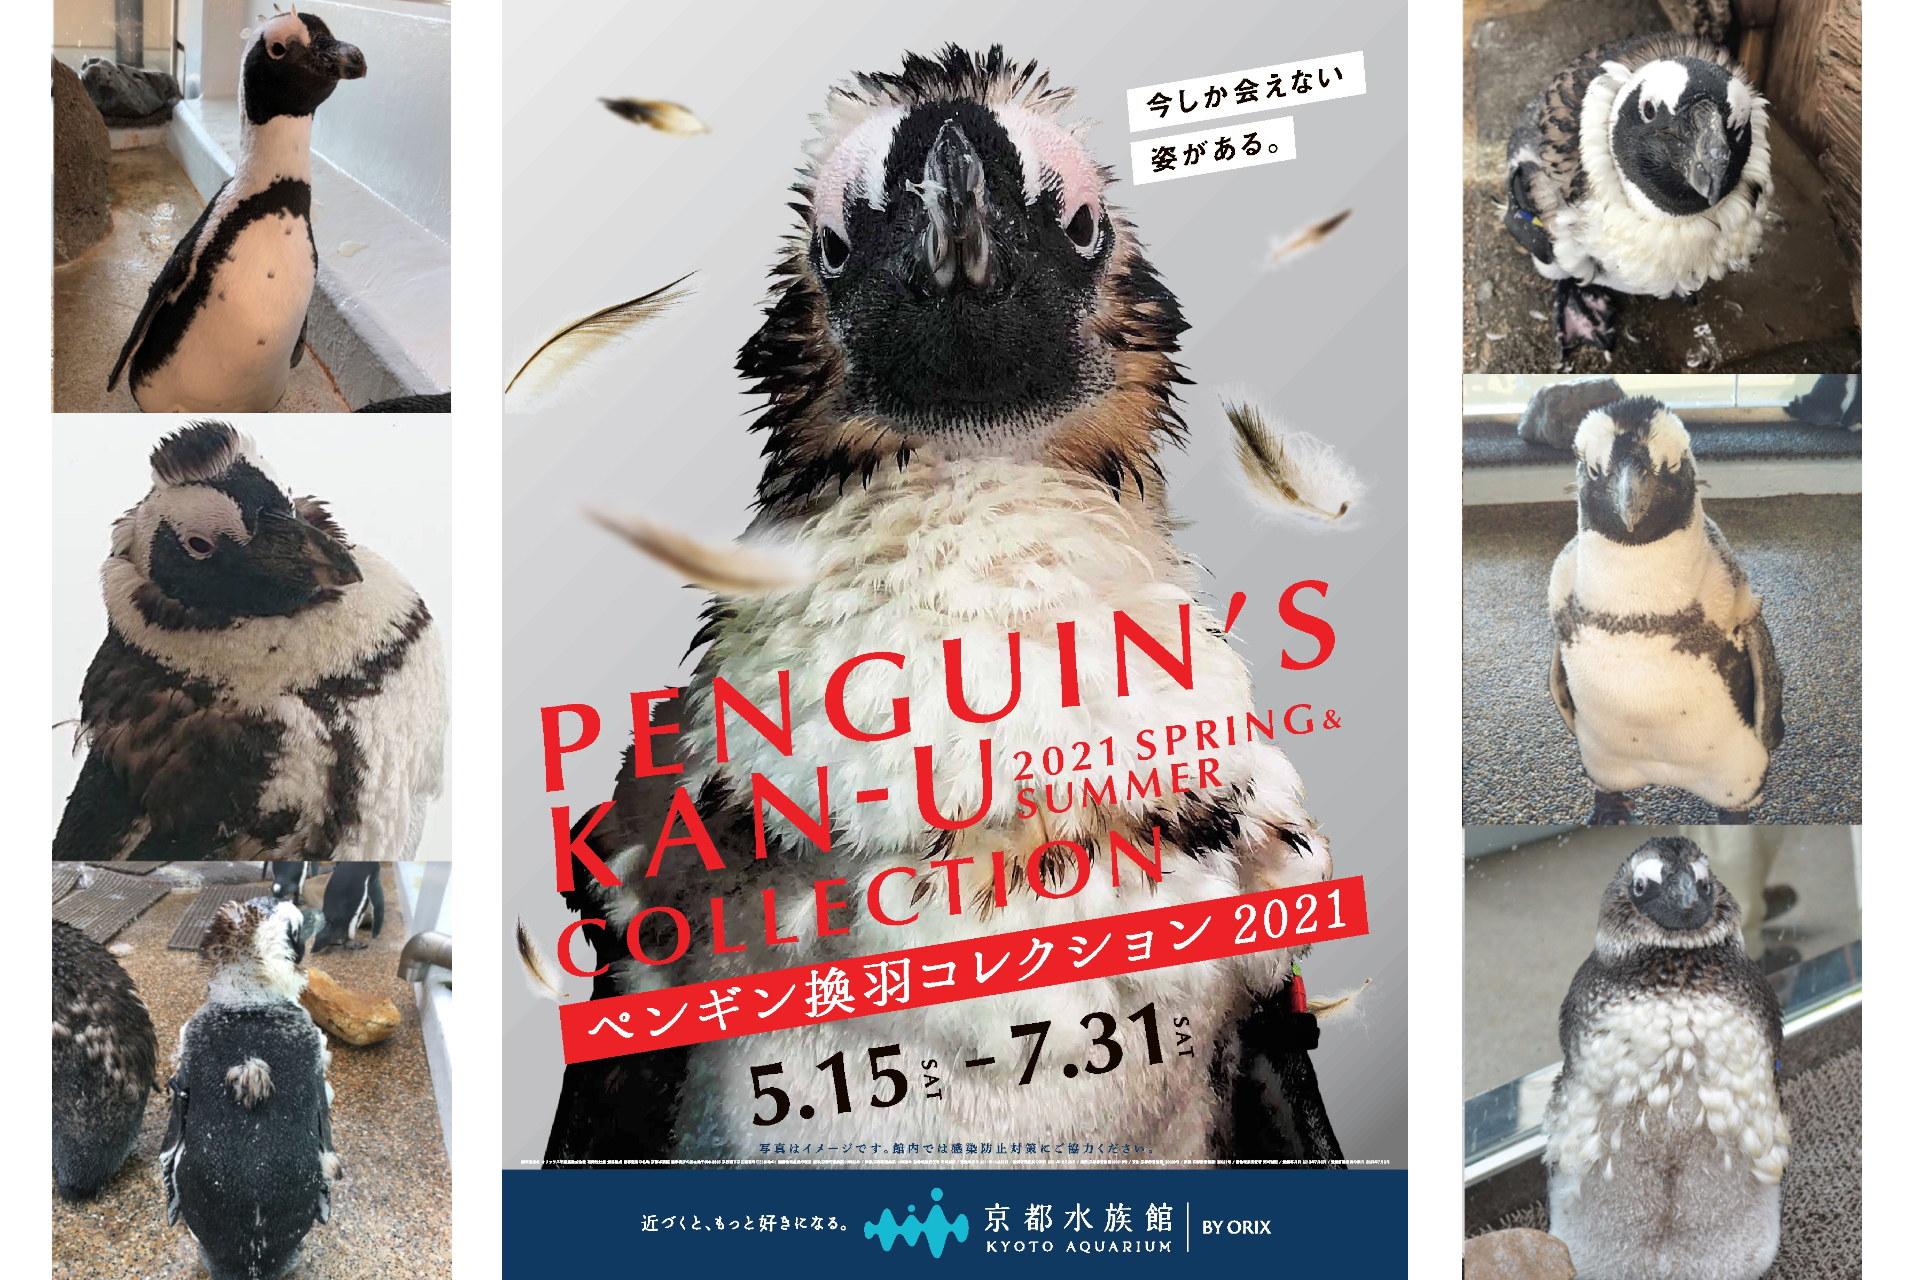 京都水族館 個性豊かな ペンギン換羽 かんう コレクション21 開催 トラベル Watch